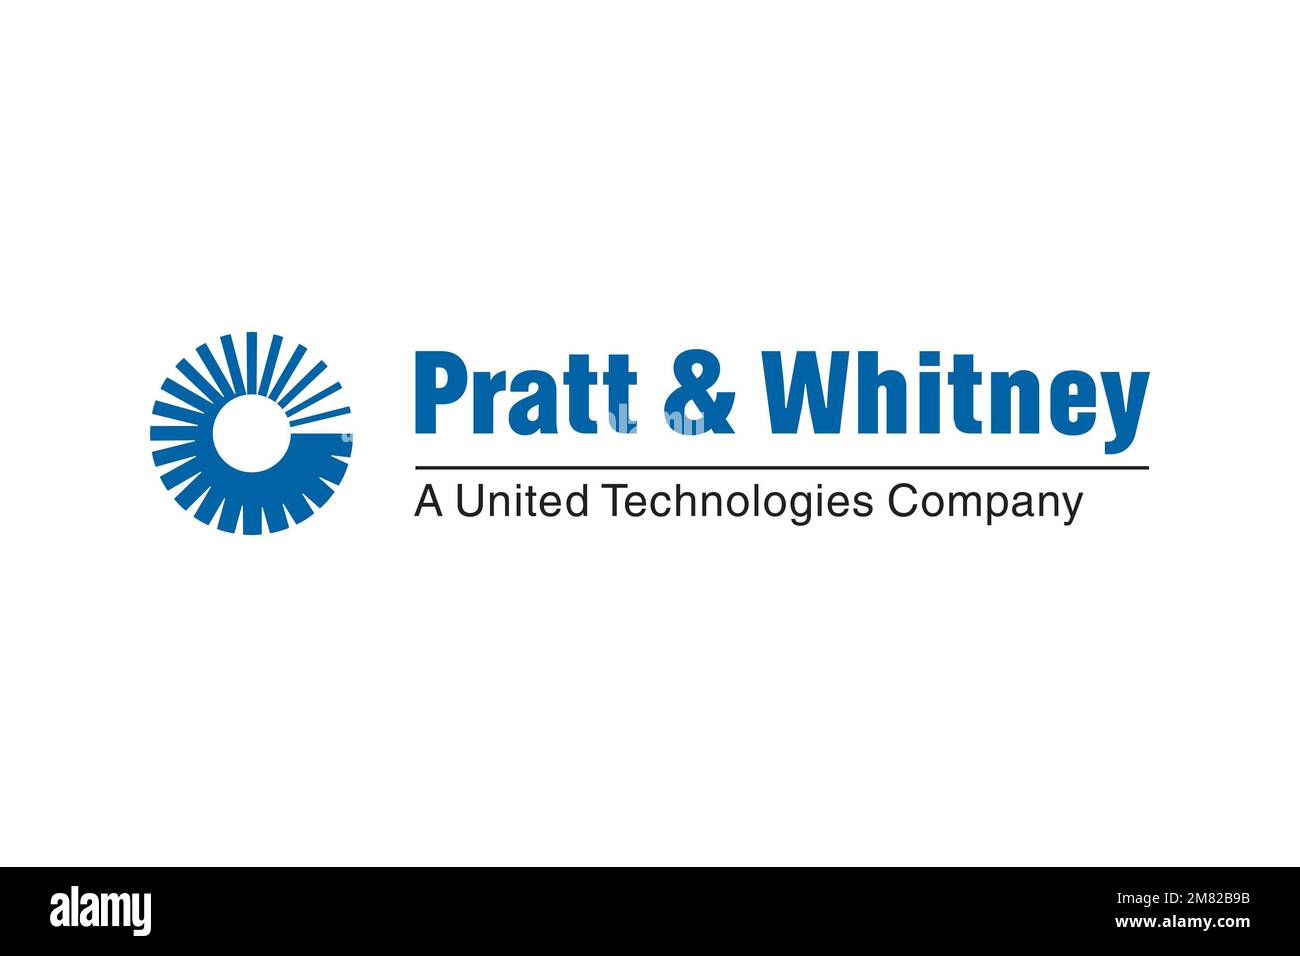 Pratt & Whitney, Logo, White Background Stock Photo